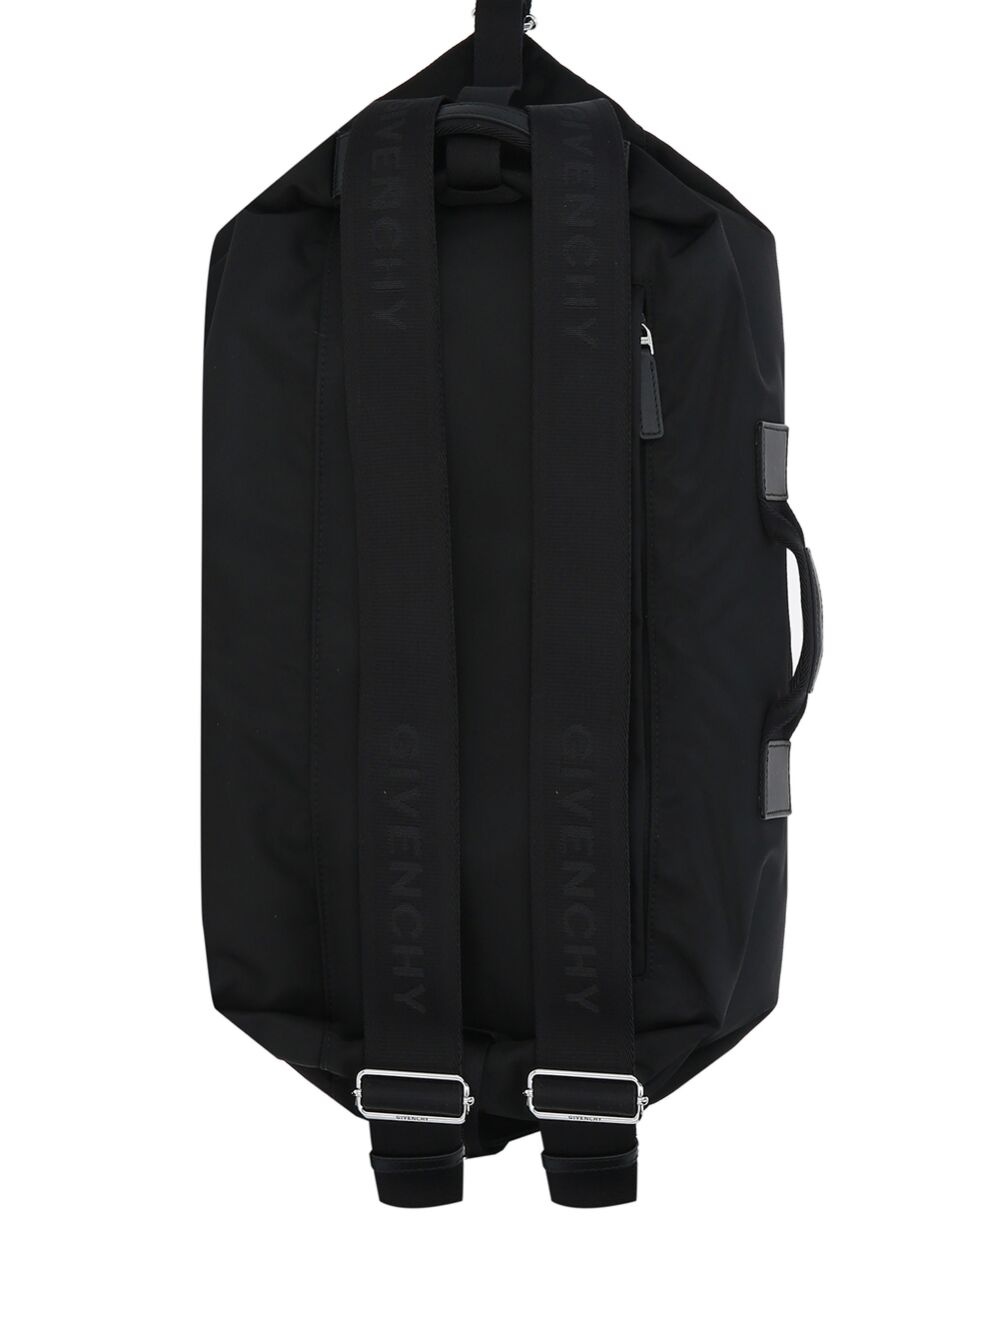 G-zip backpack - 2